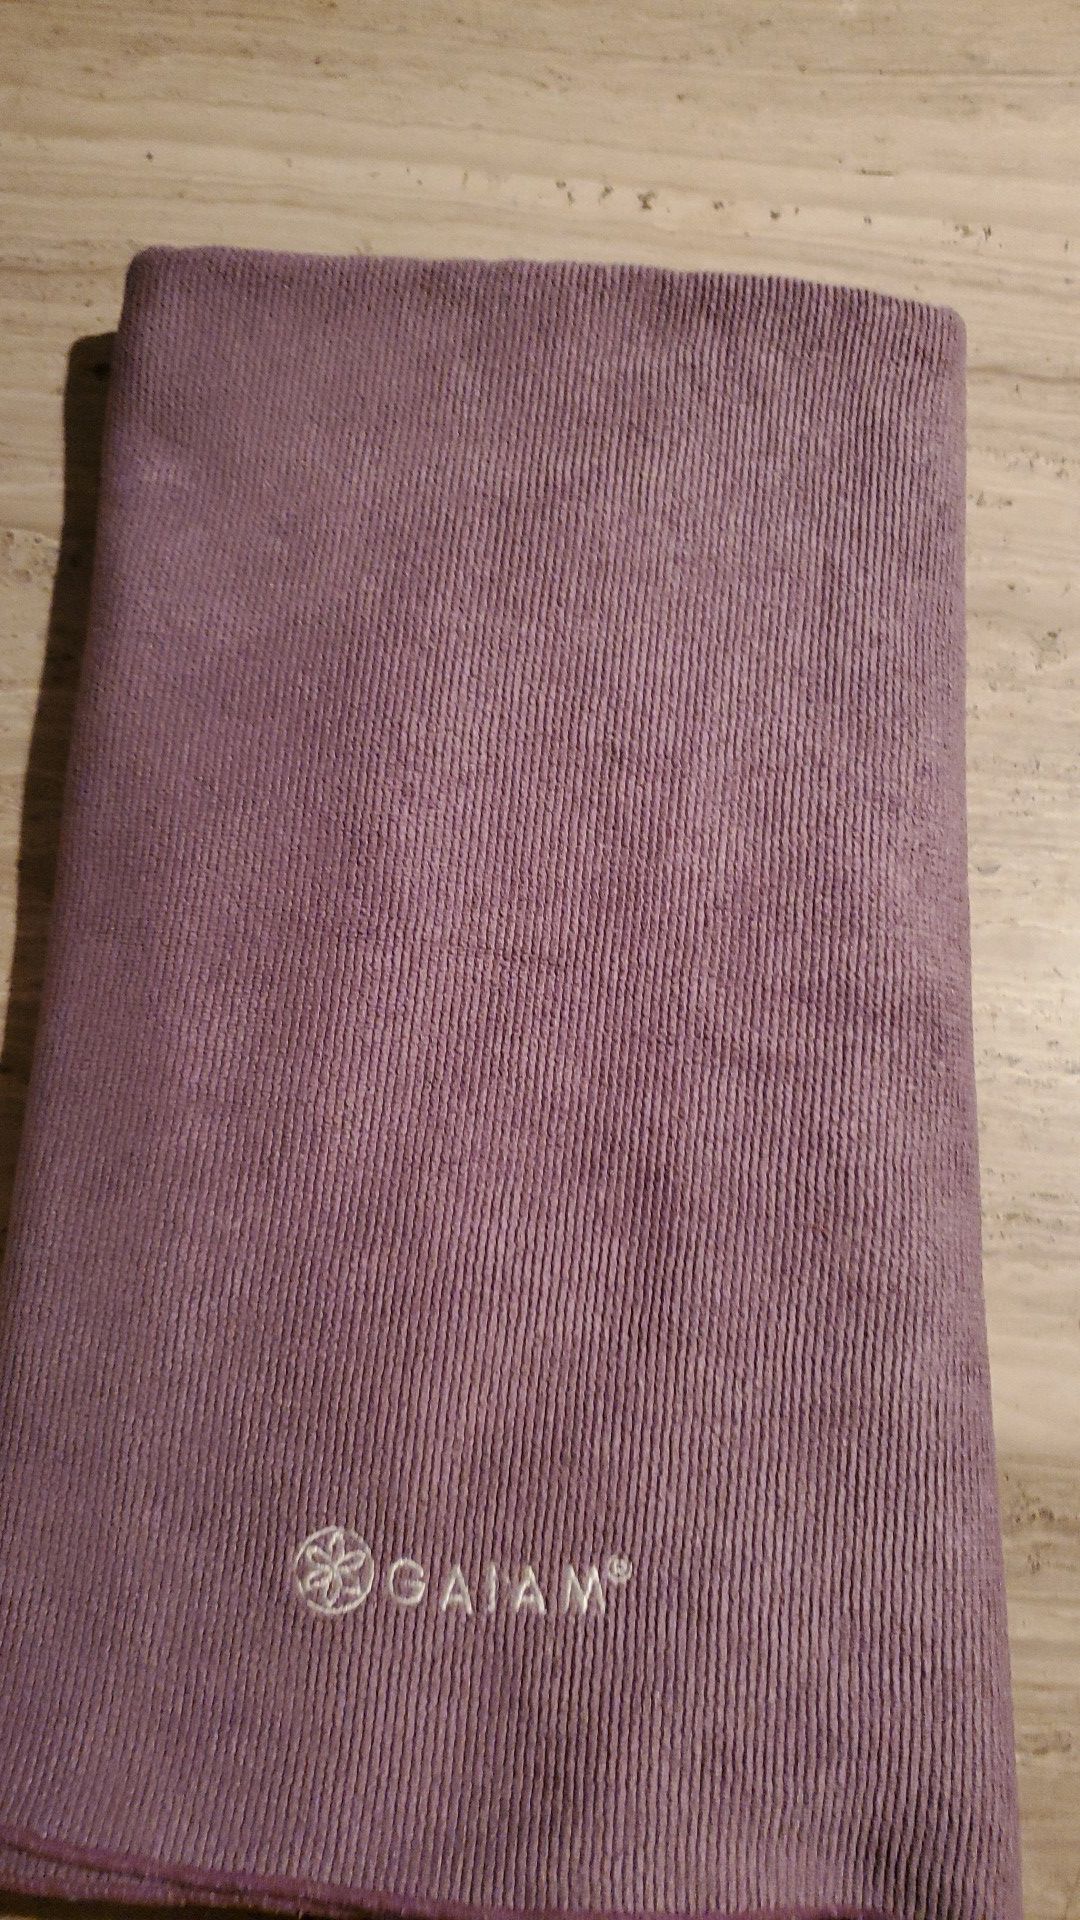 Gaiam yoga towel/mat cover